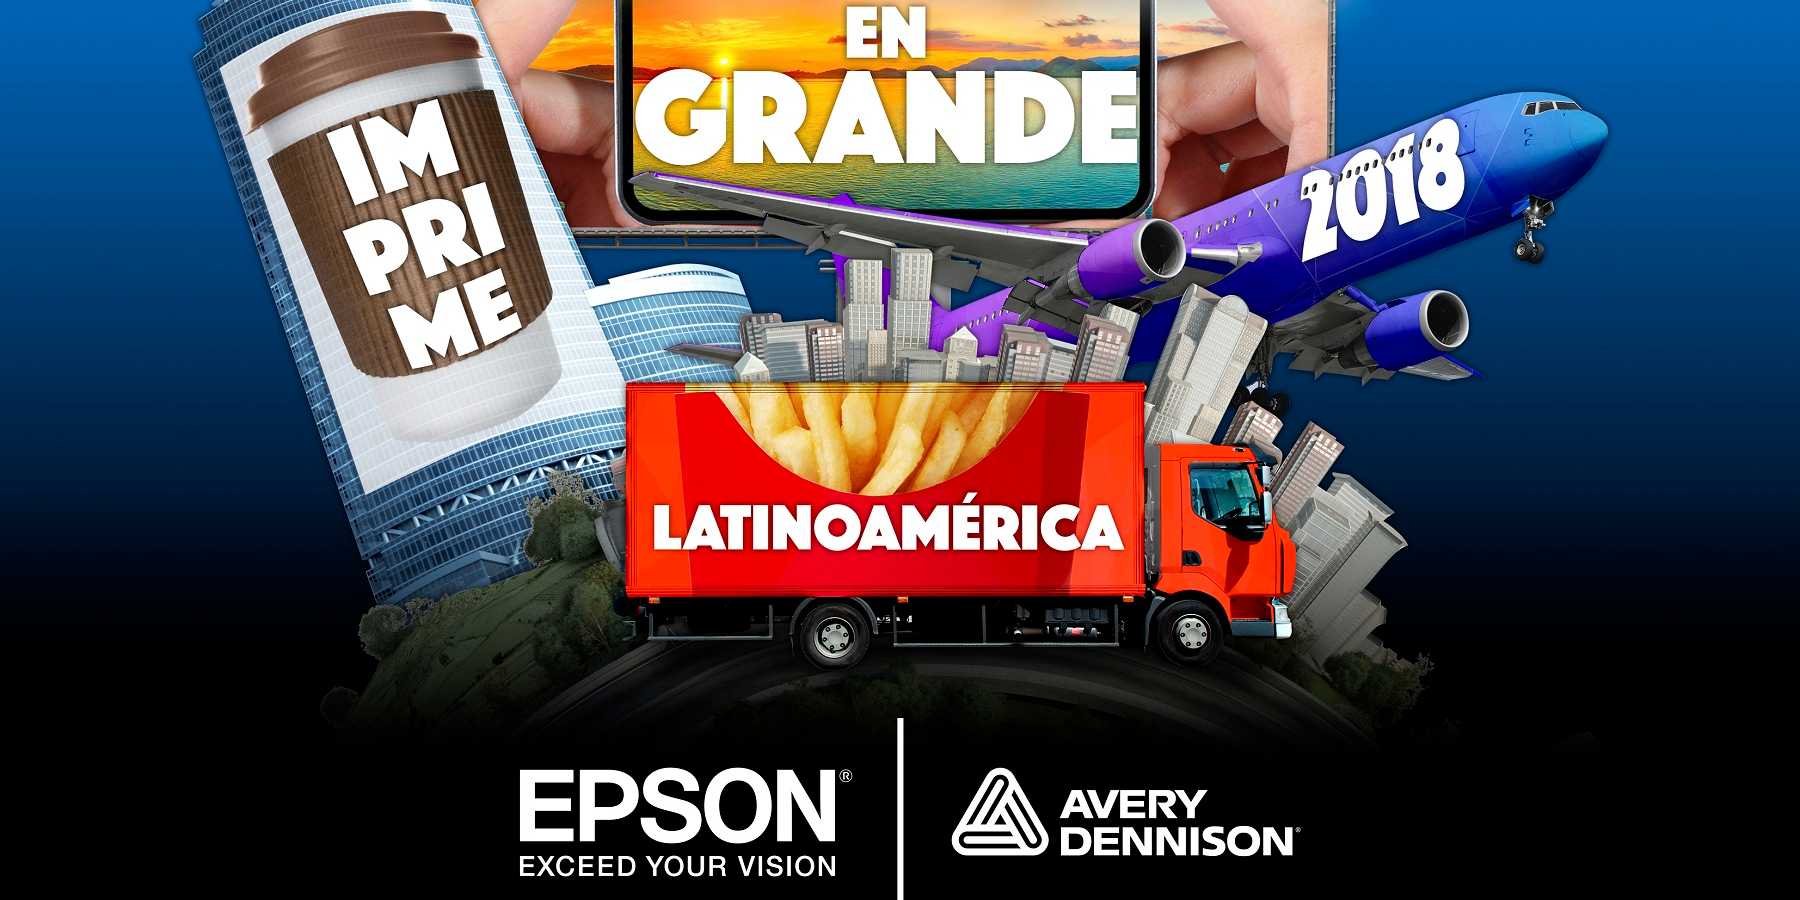 Epson y Avery Dennison abren el concurso 'Imprime en grande' en Latinoamérica